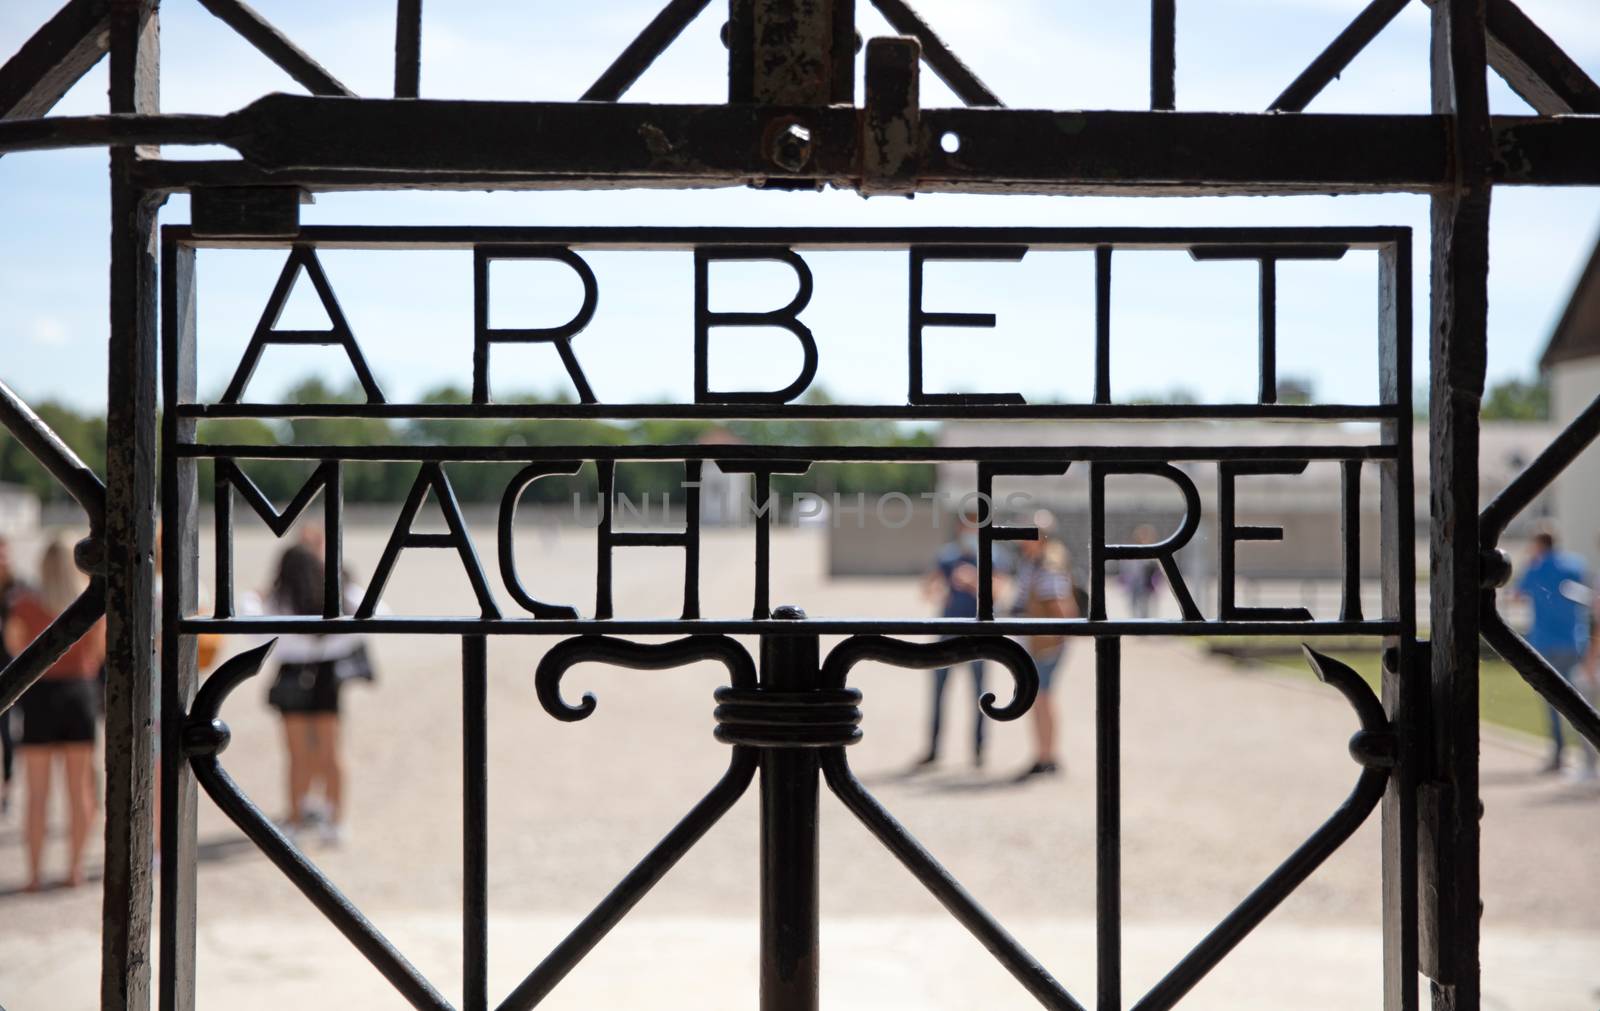 Dachau, Germany on july 13, 2020: Dachau concentration camp entr by michaklootwijk